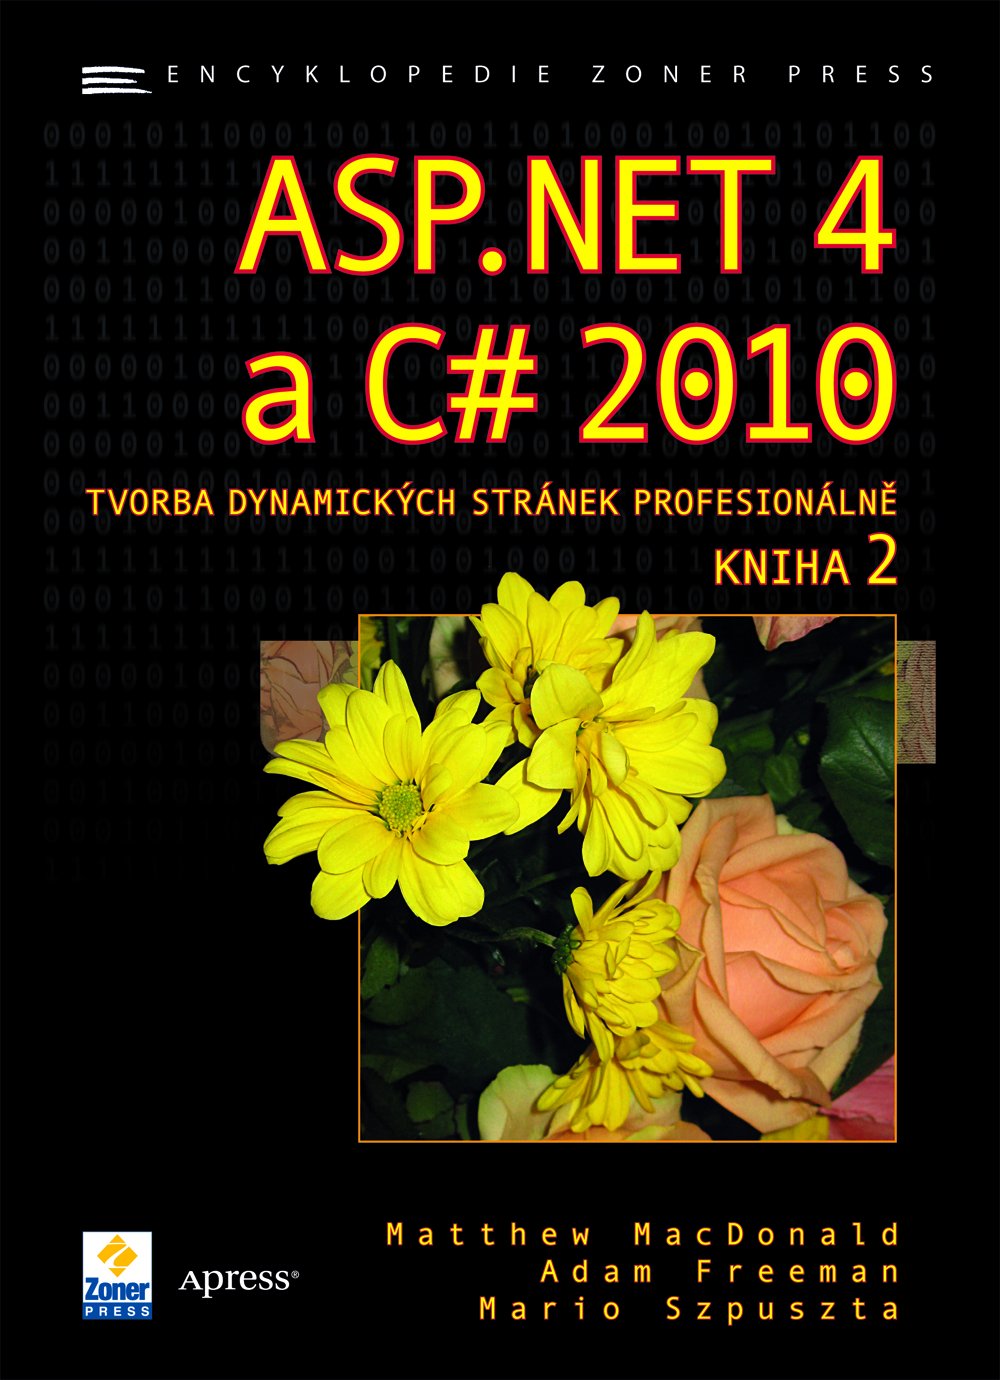 ASP.NET 4 a C# 2010 - KNIHA 2 - tvorba dynamických stránek profesionálně - Matthew MacDonald